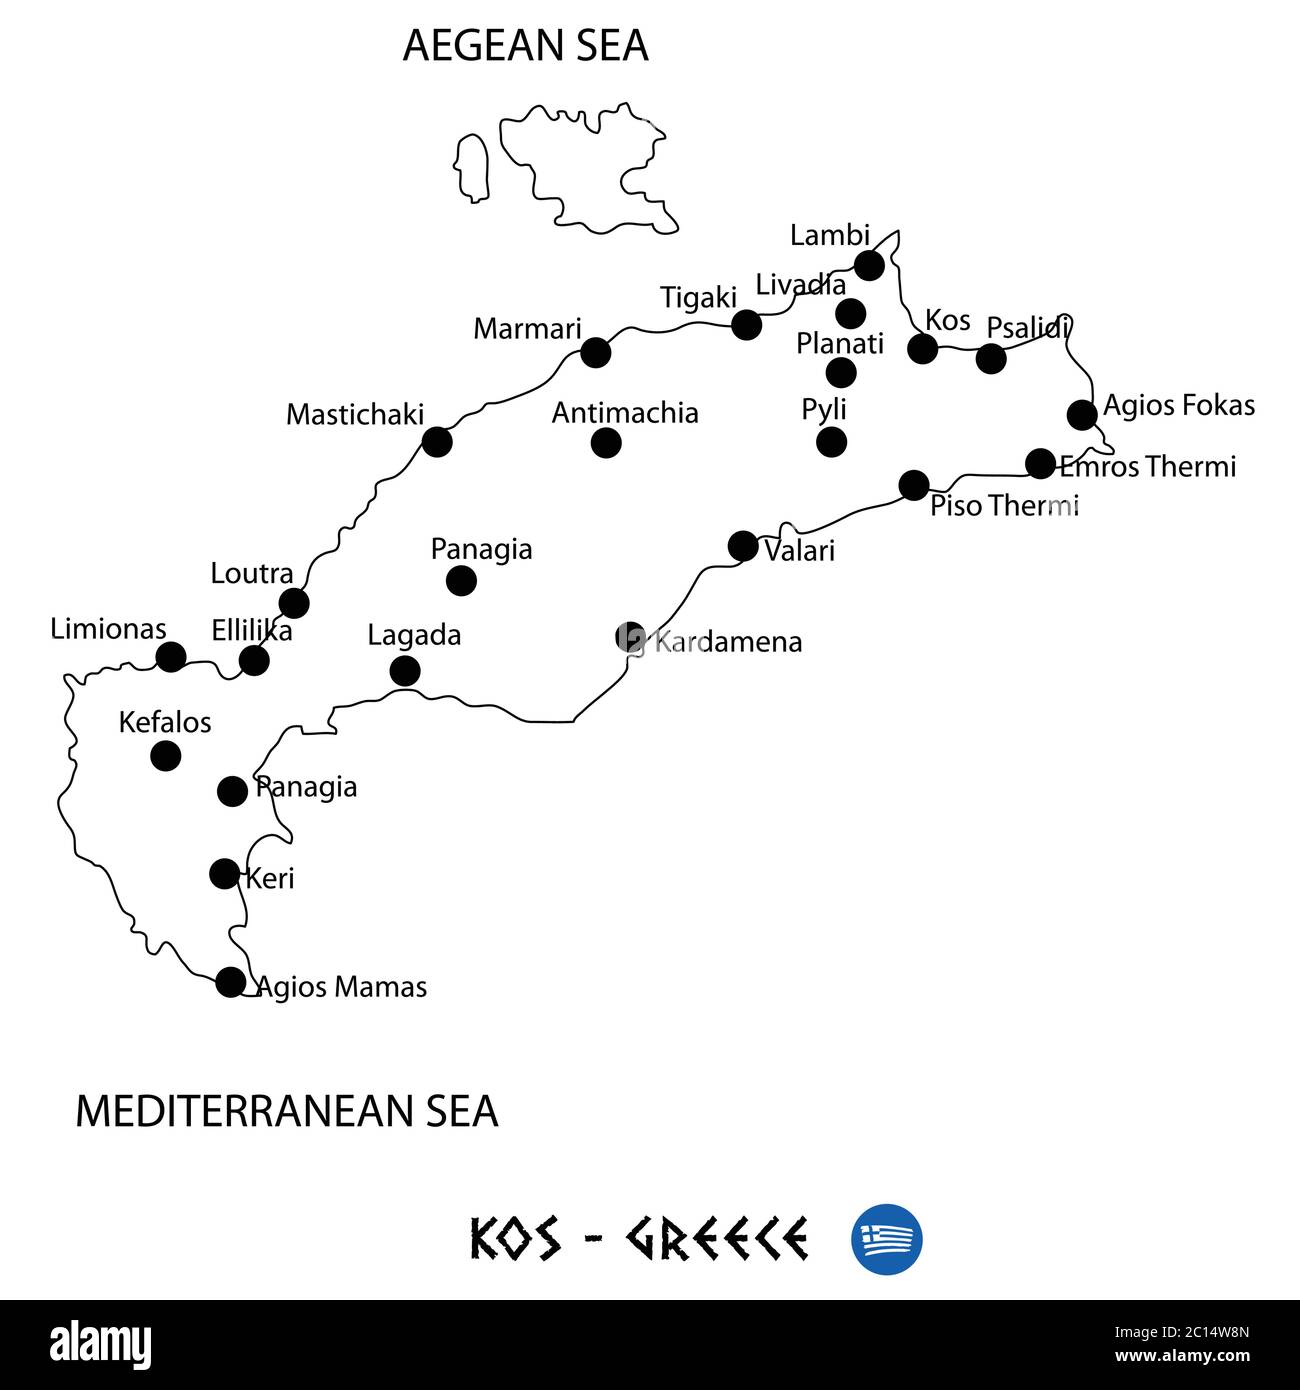 Insel Kos in Griechenland Kartenkunst auf weißem Hintergrund Stock Vektor